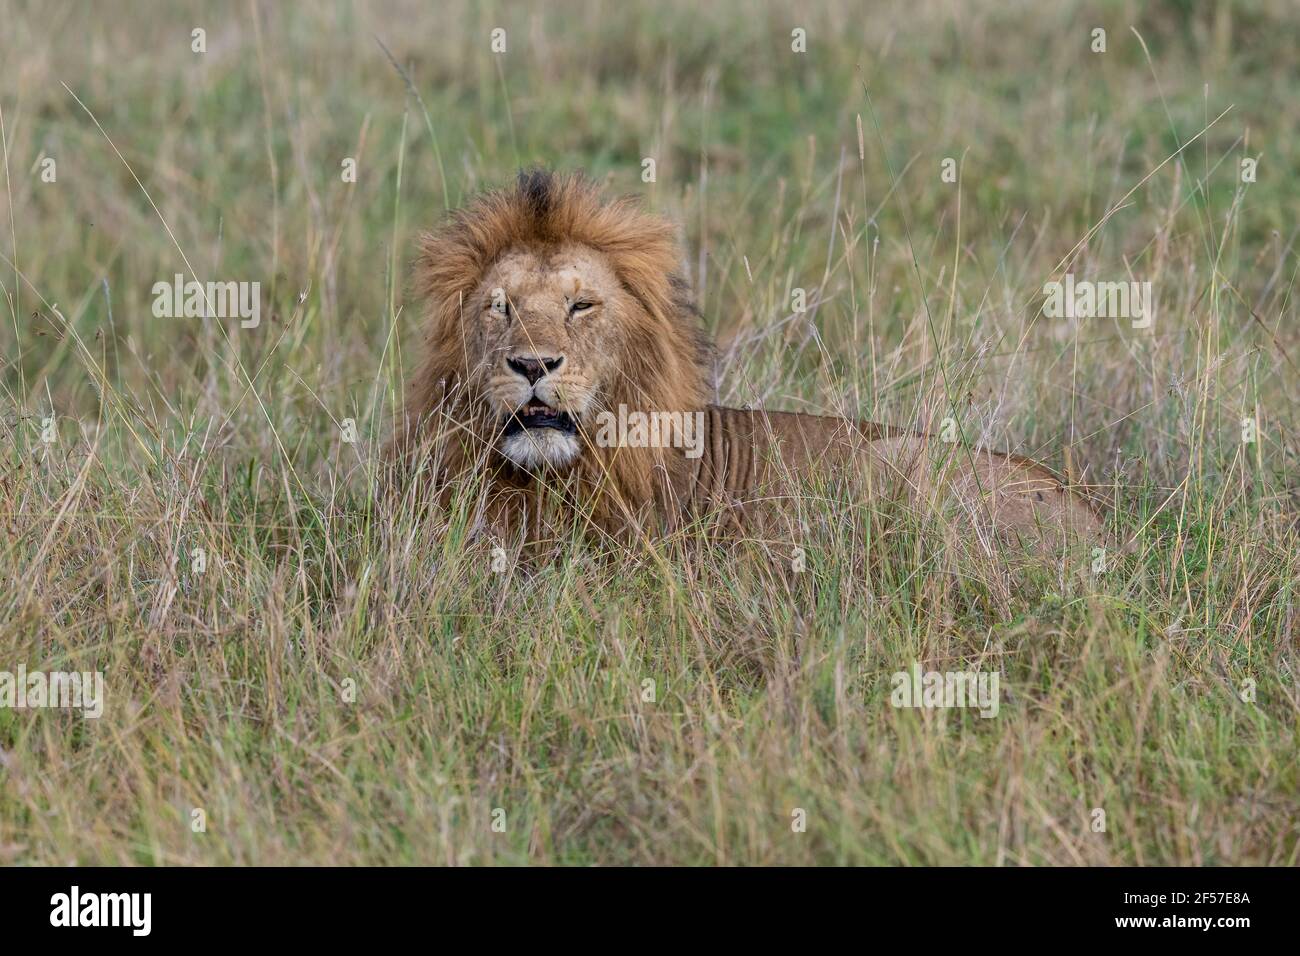 Belle photo d'un adorable lion dans une grande herbe une svannah Banque D'Images